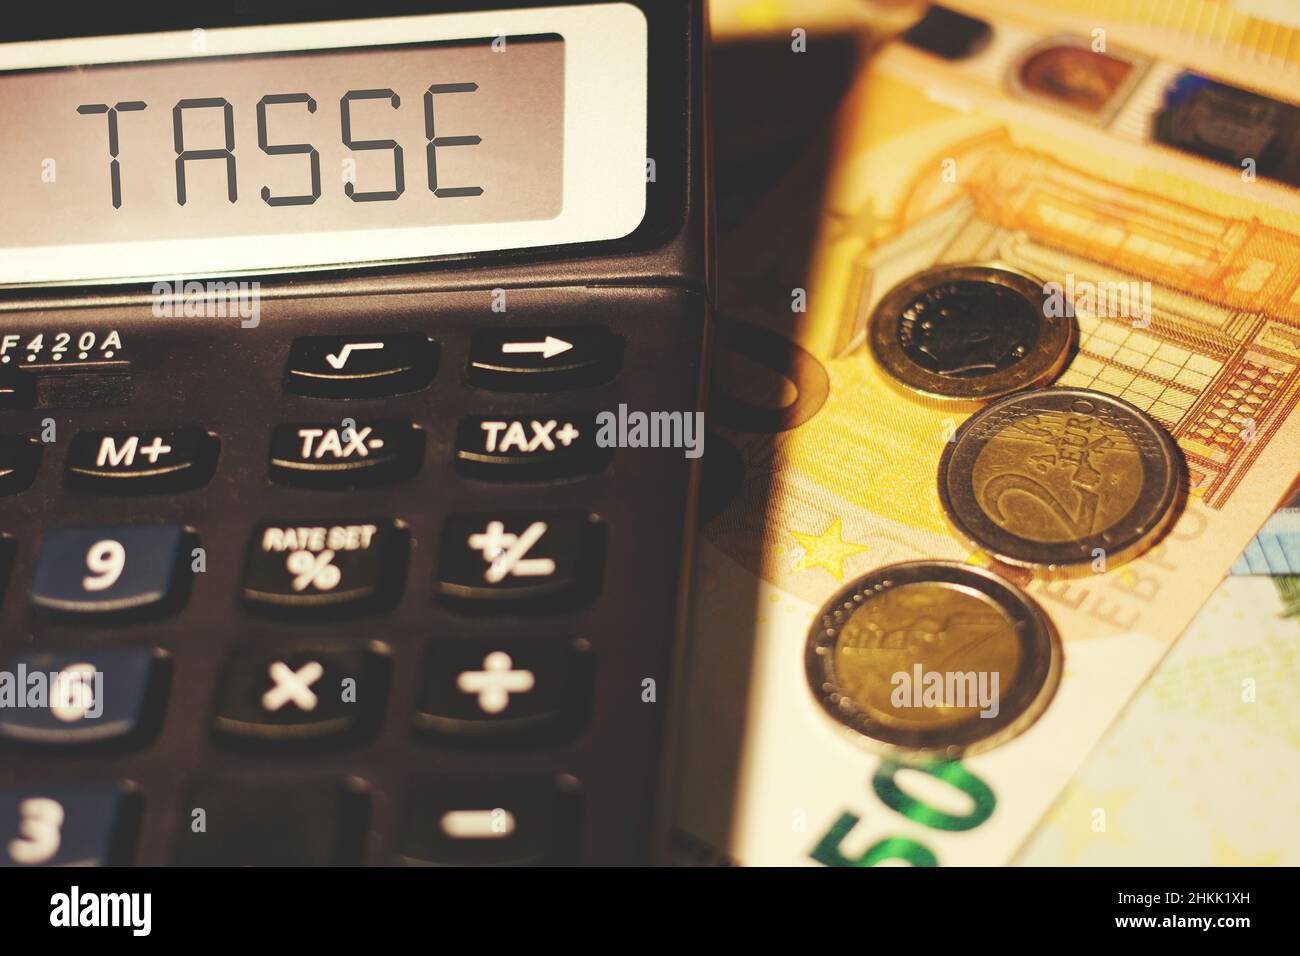 Calculatrice avec le signe 'Tasse' traduisant en italien dans 'Tax', concept de calcul de la taxe italienne Banque D'Images